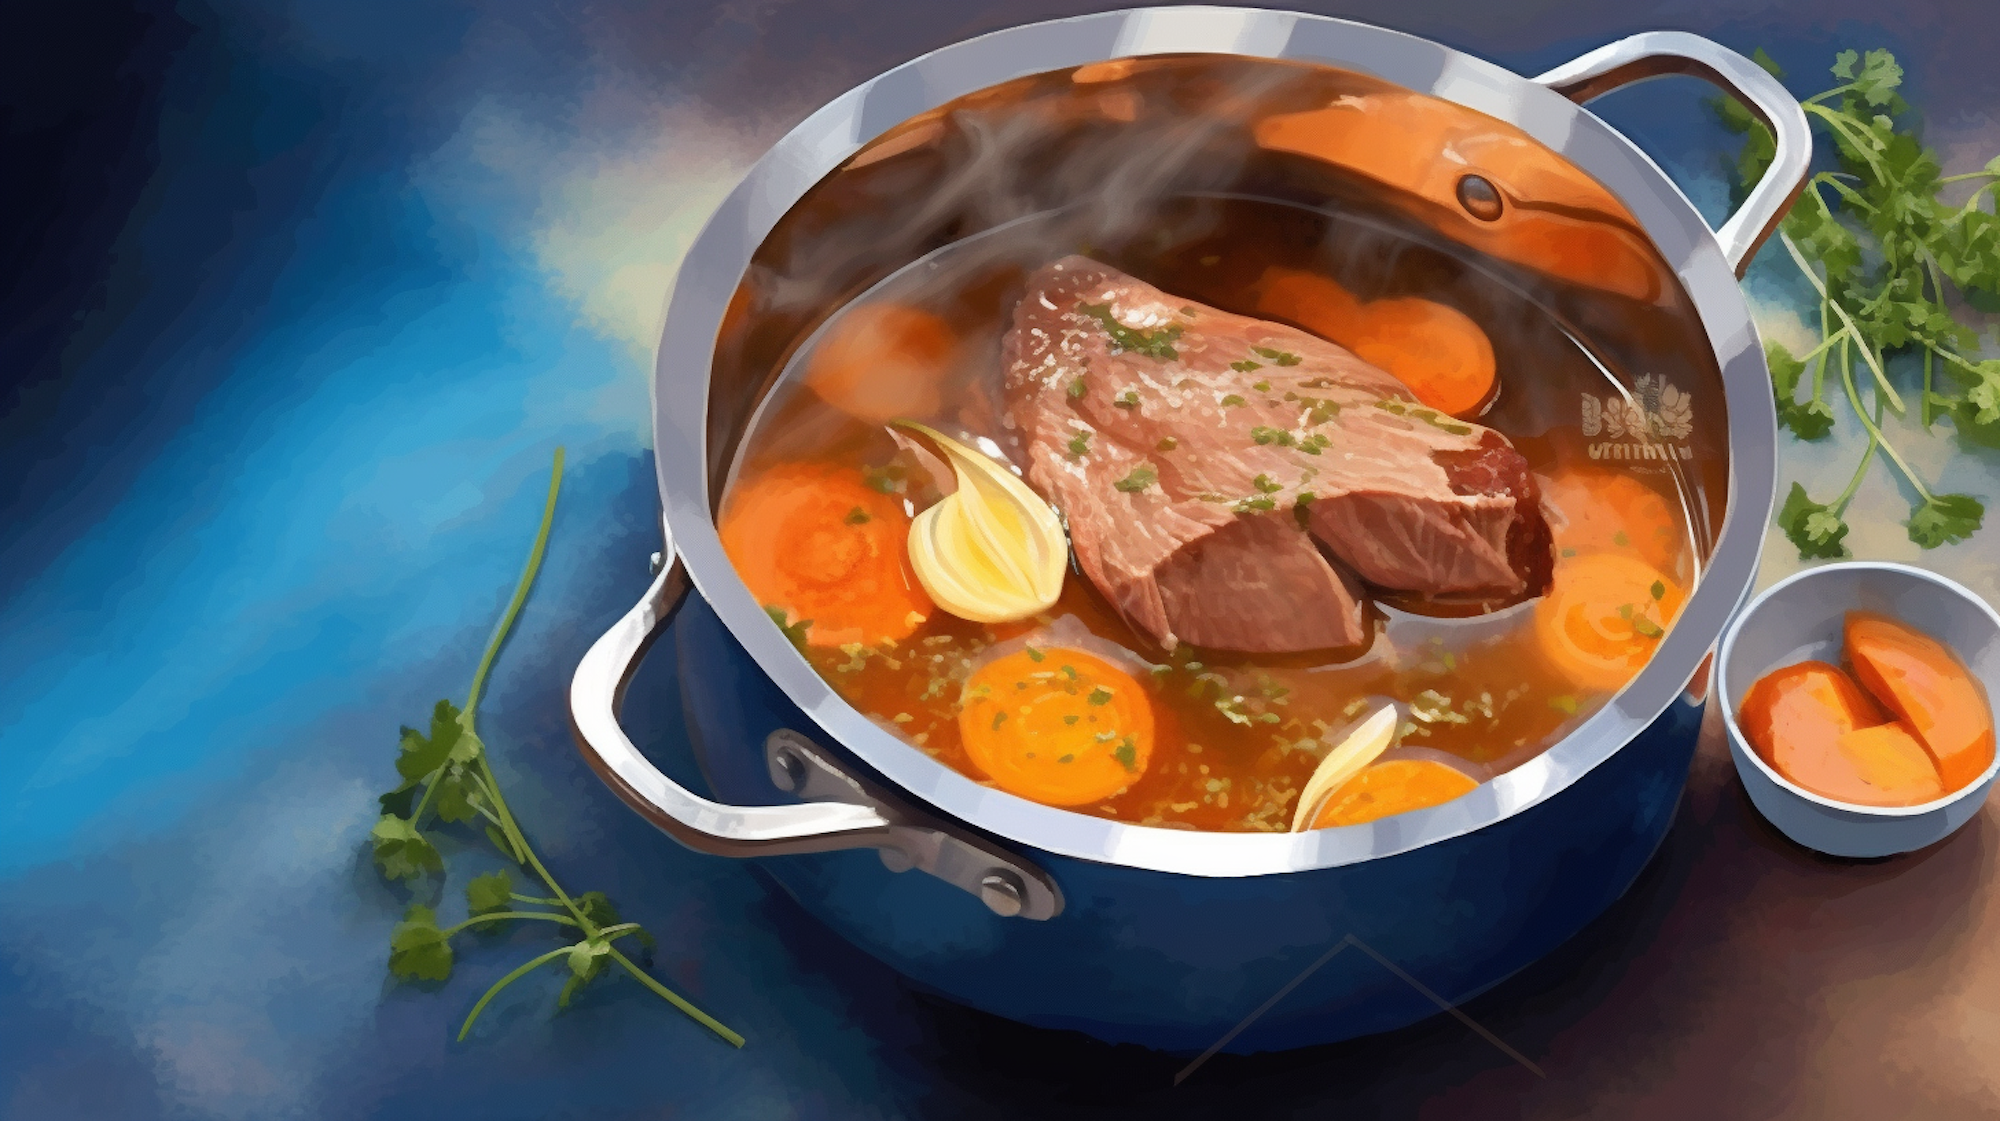 Illustration: Rindfleisch in einem Suppentopf